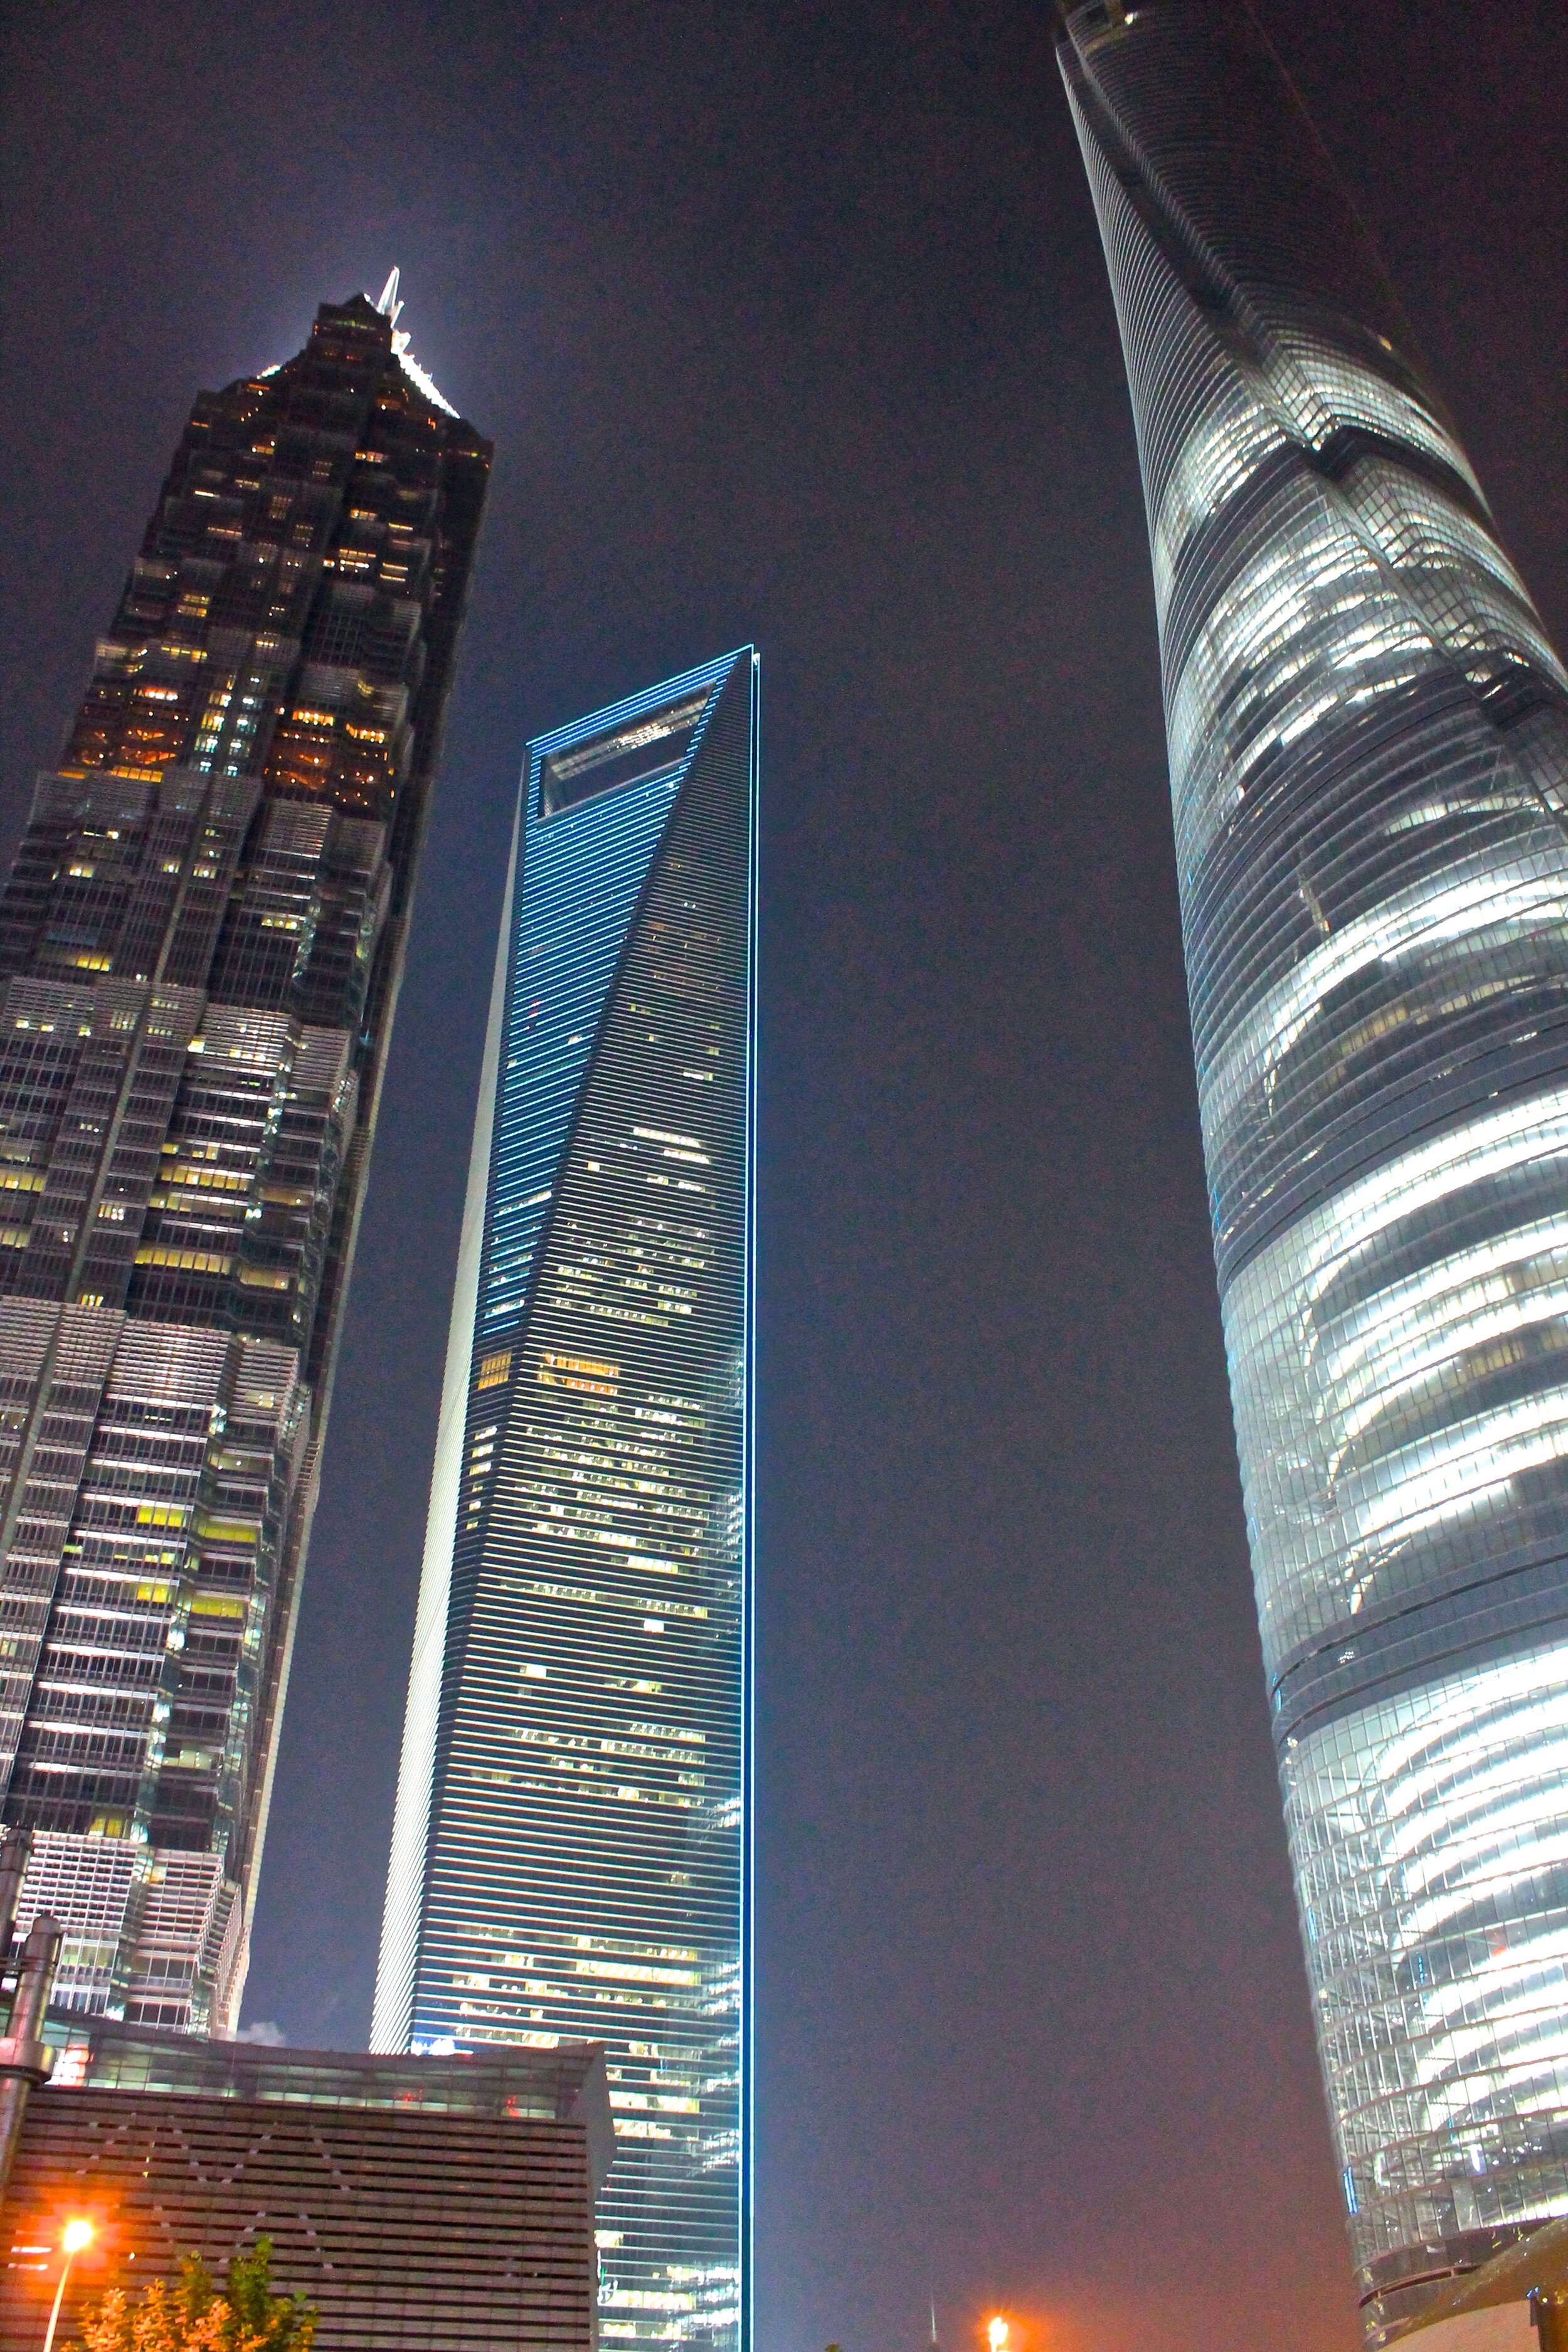   Shanghai Skyline, Shanghai, China (ISO 3200, 18 mm,  f /5.6, 1/10 s)  